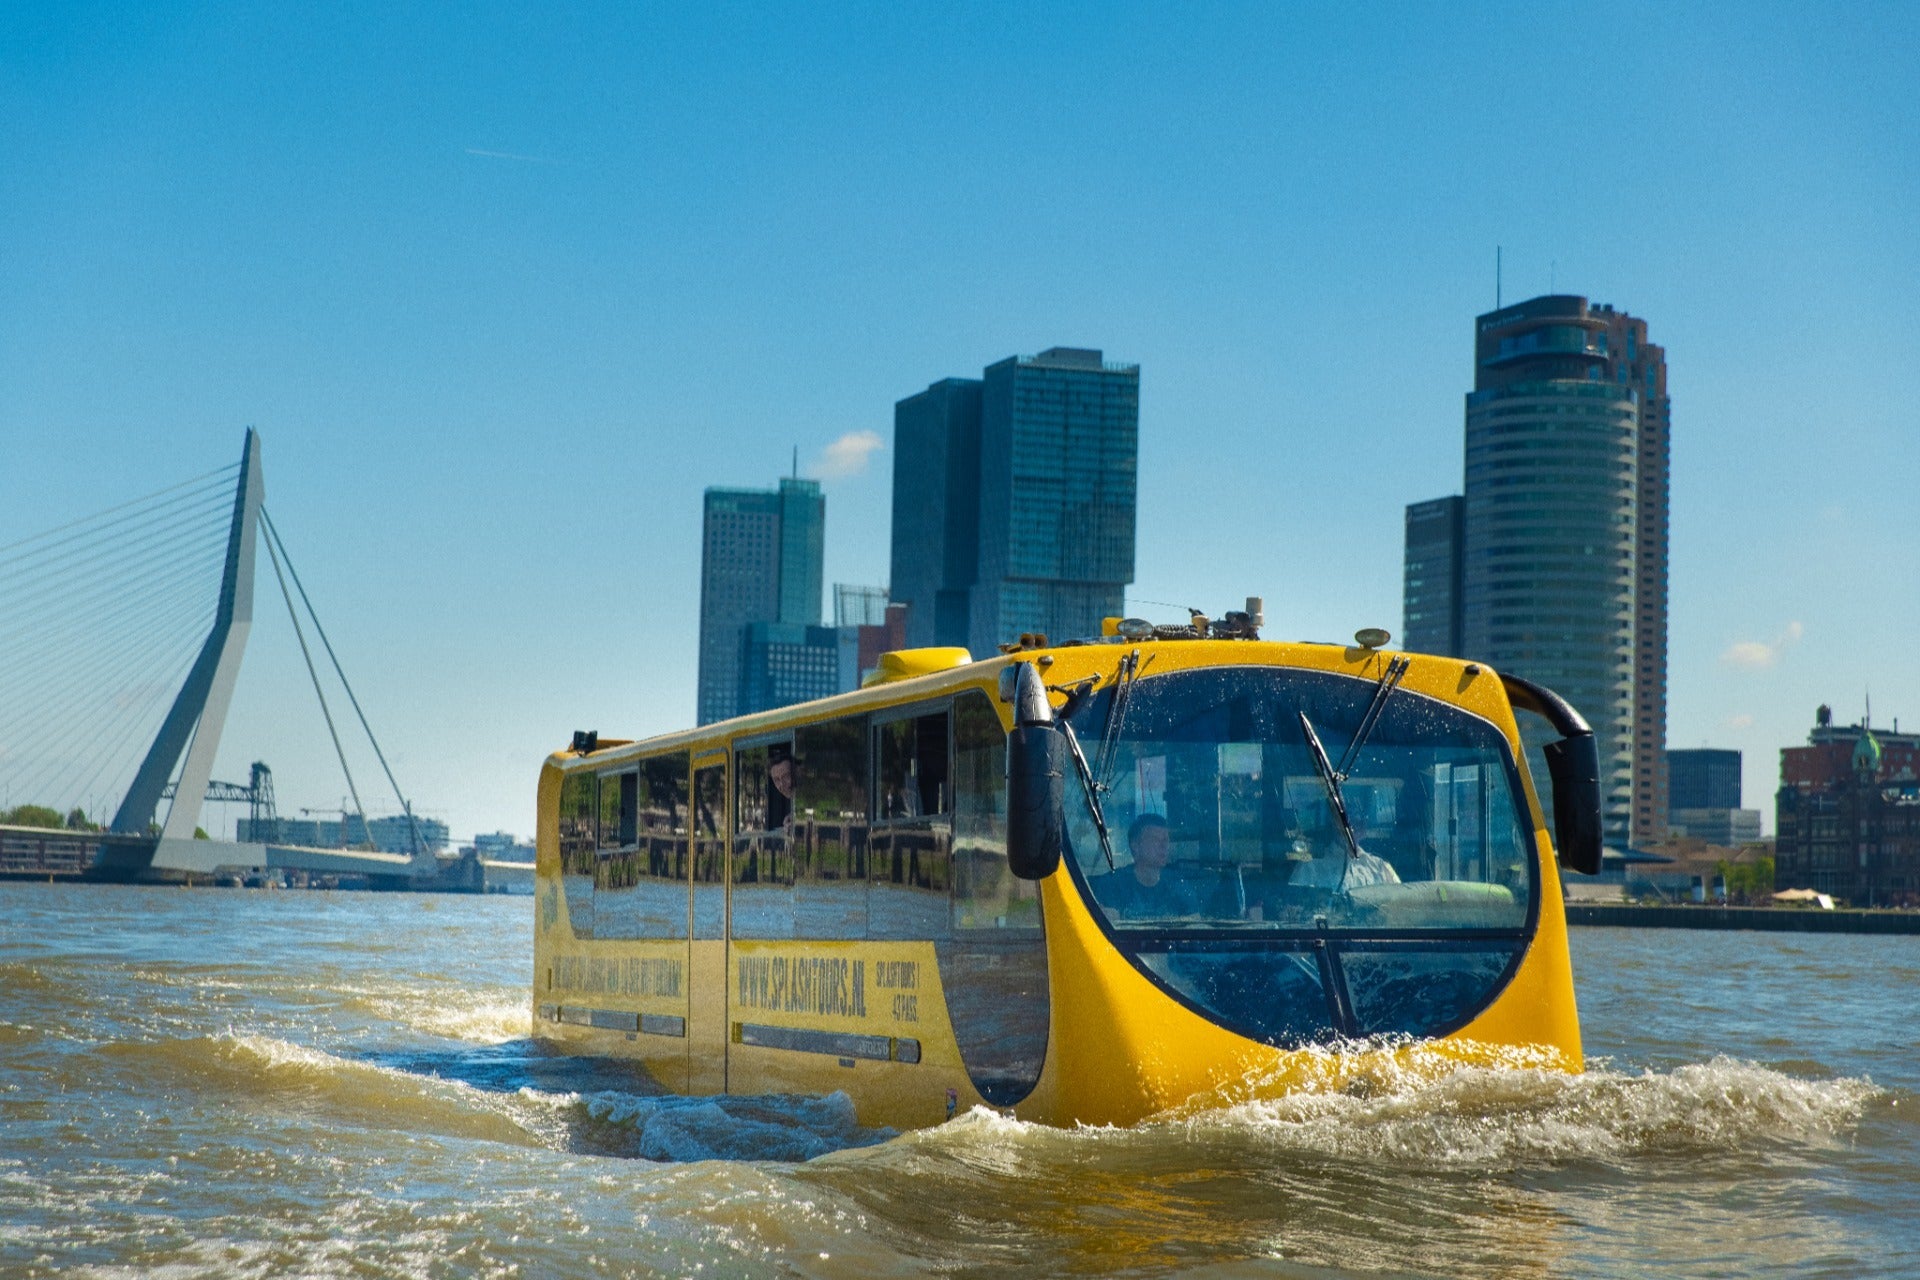 Visite de Rotterdam en bus amphibie